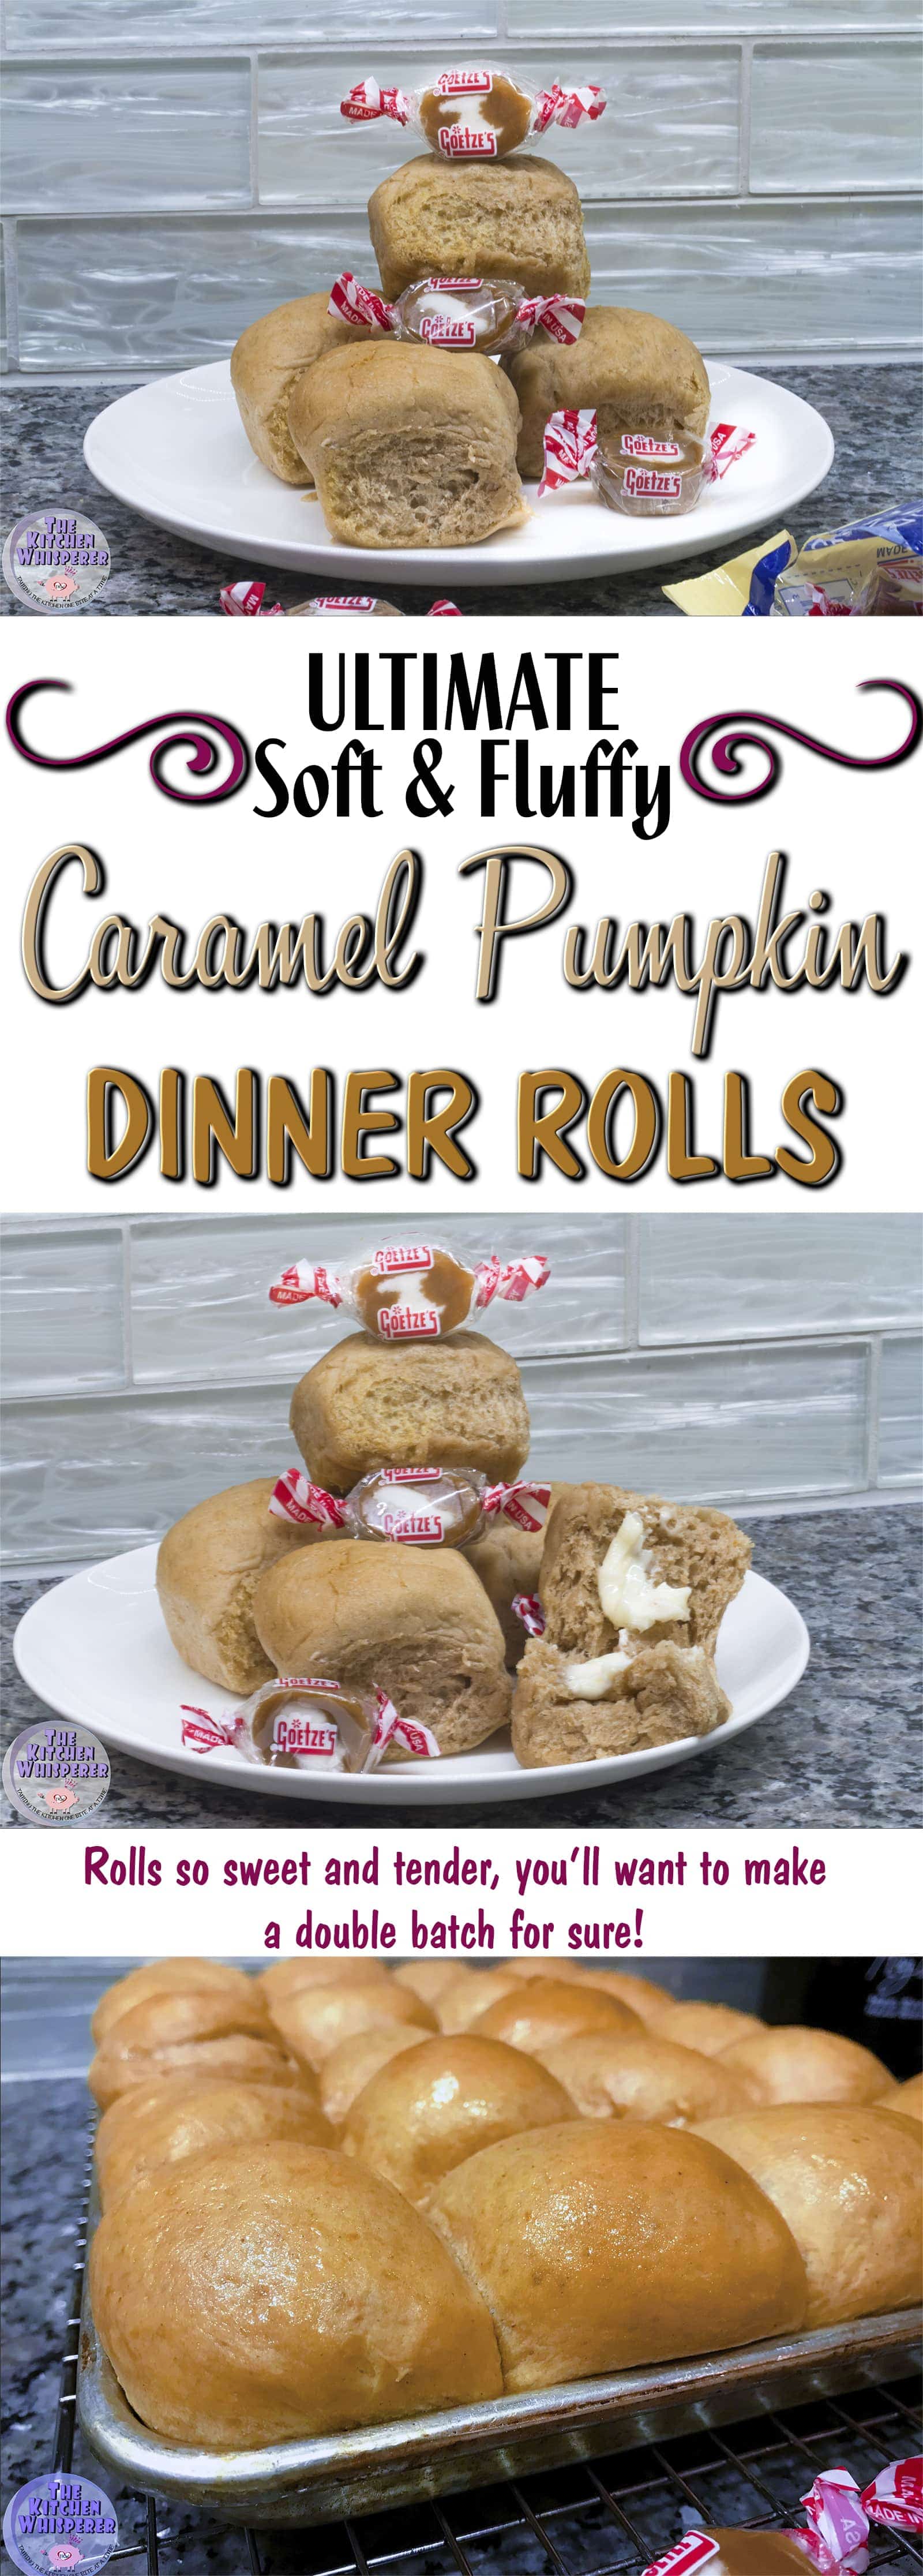 Caramel Pumpkin Dinner Rolls featuring Goetze's Vanilla Caramel Creams®